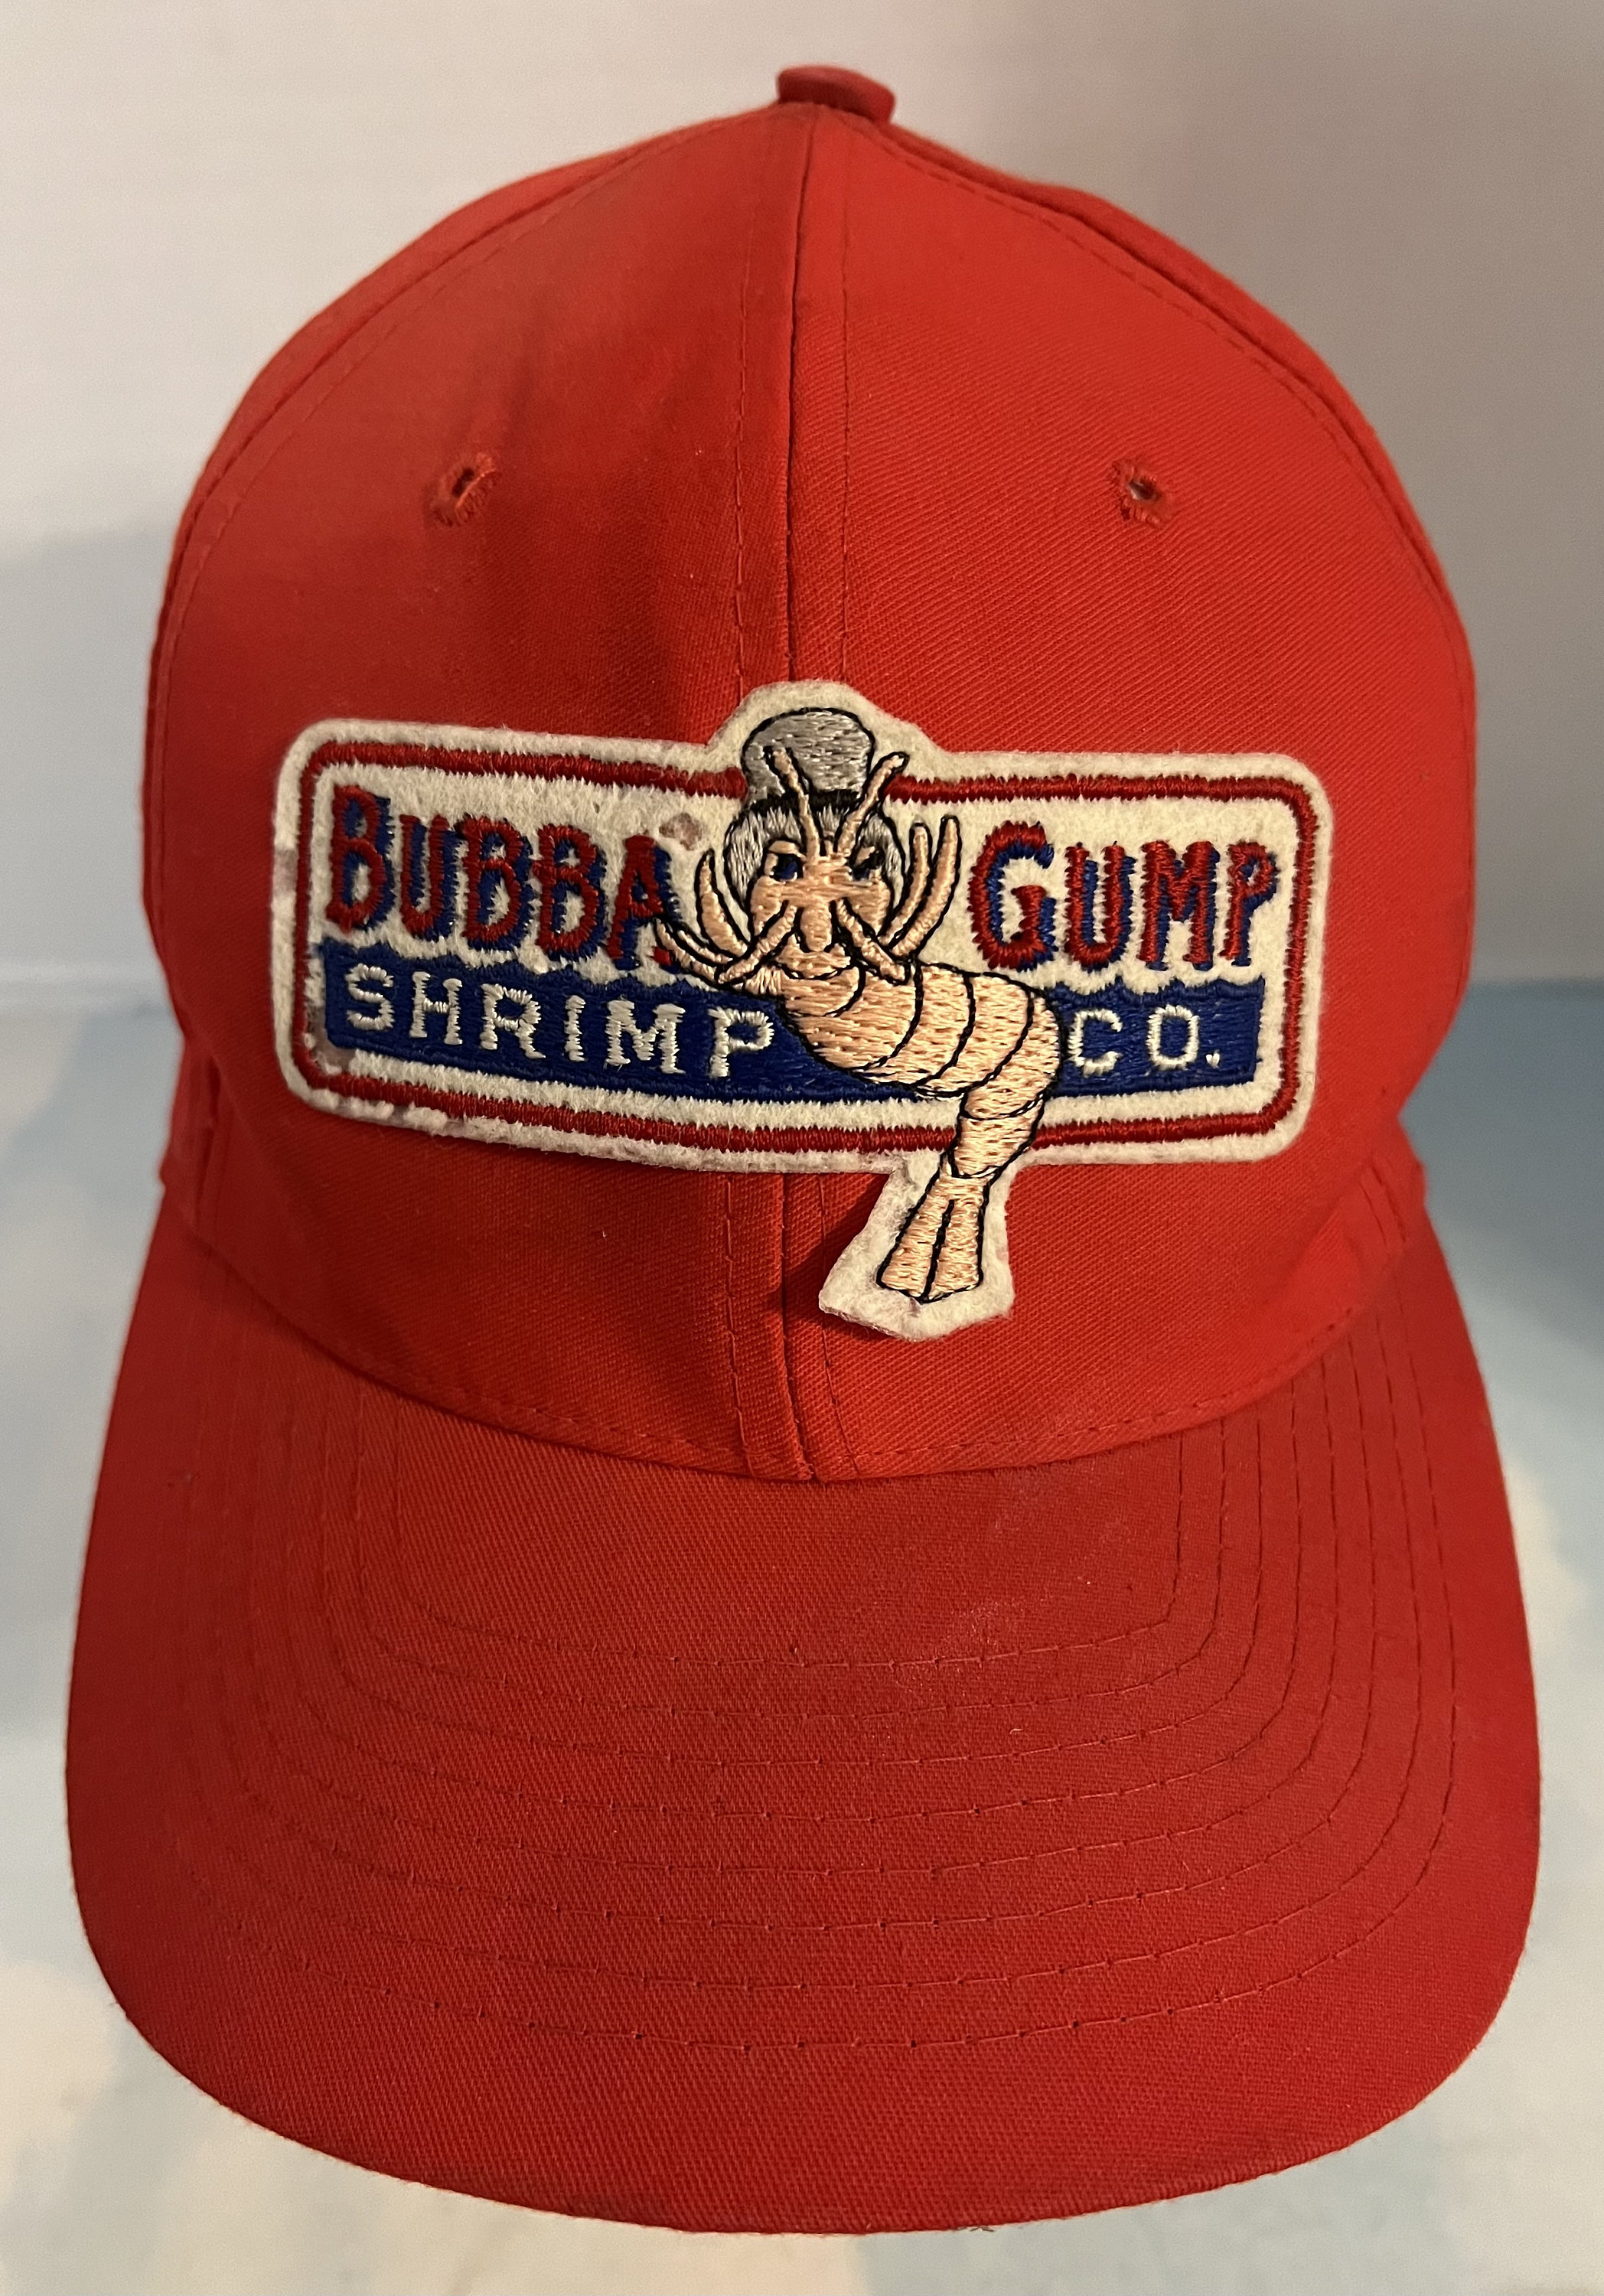 Bubba Gump Cap 